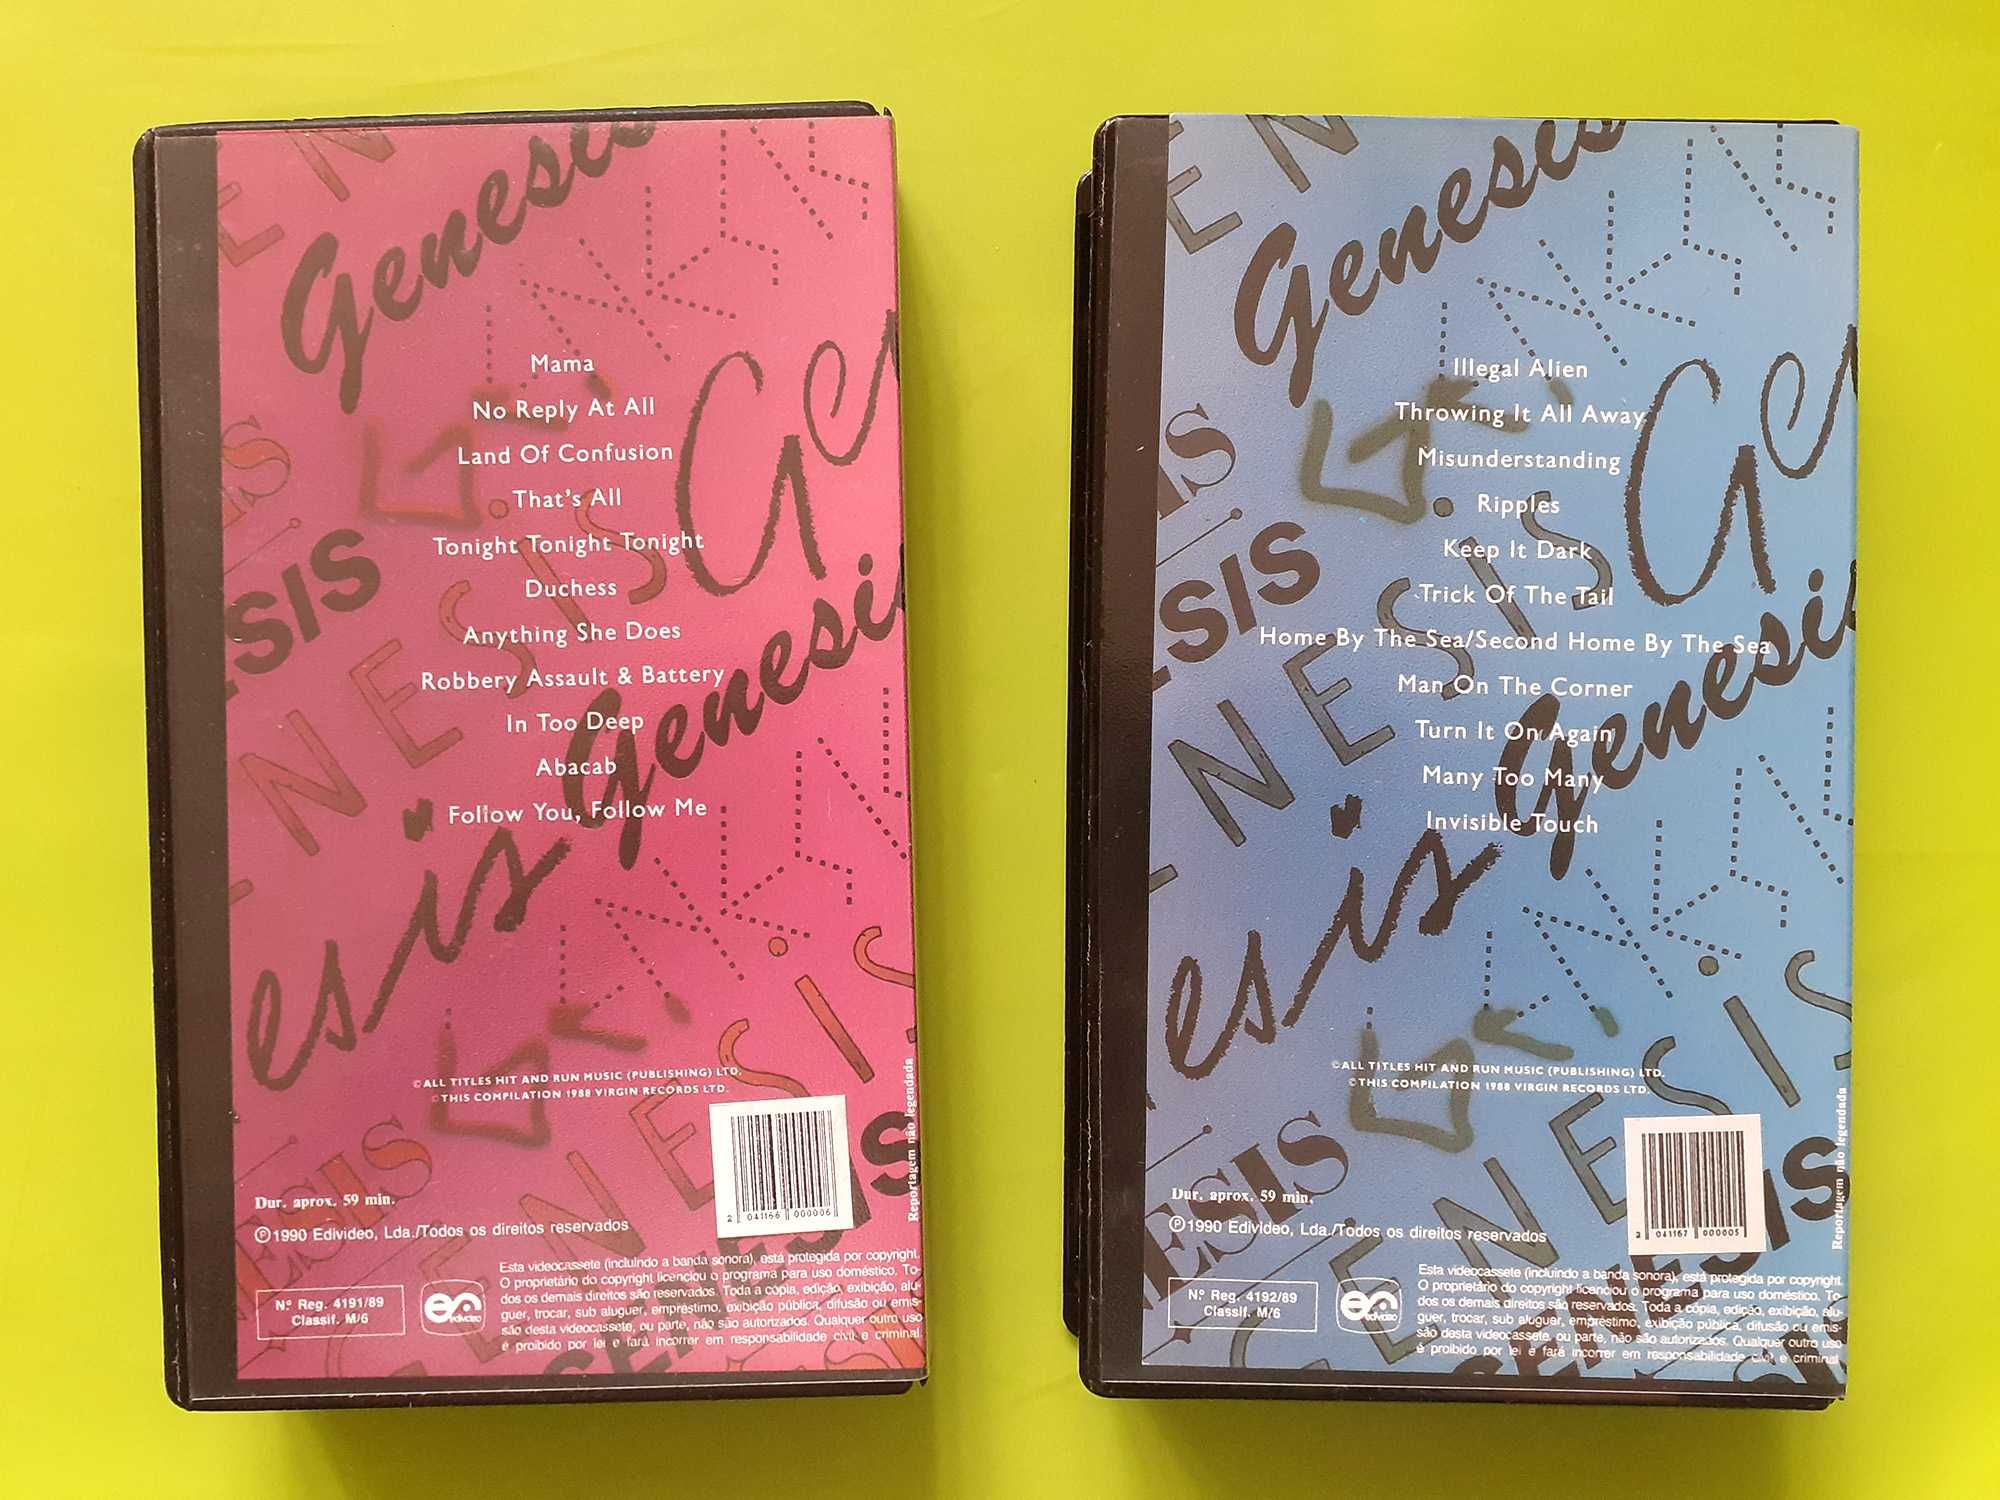 2 cassetes VHS originais com videoclips dos GENESIS